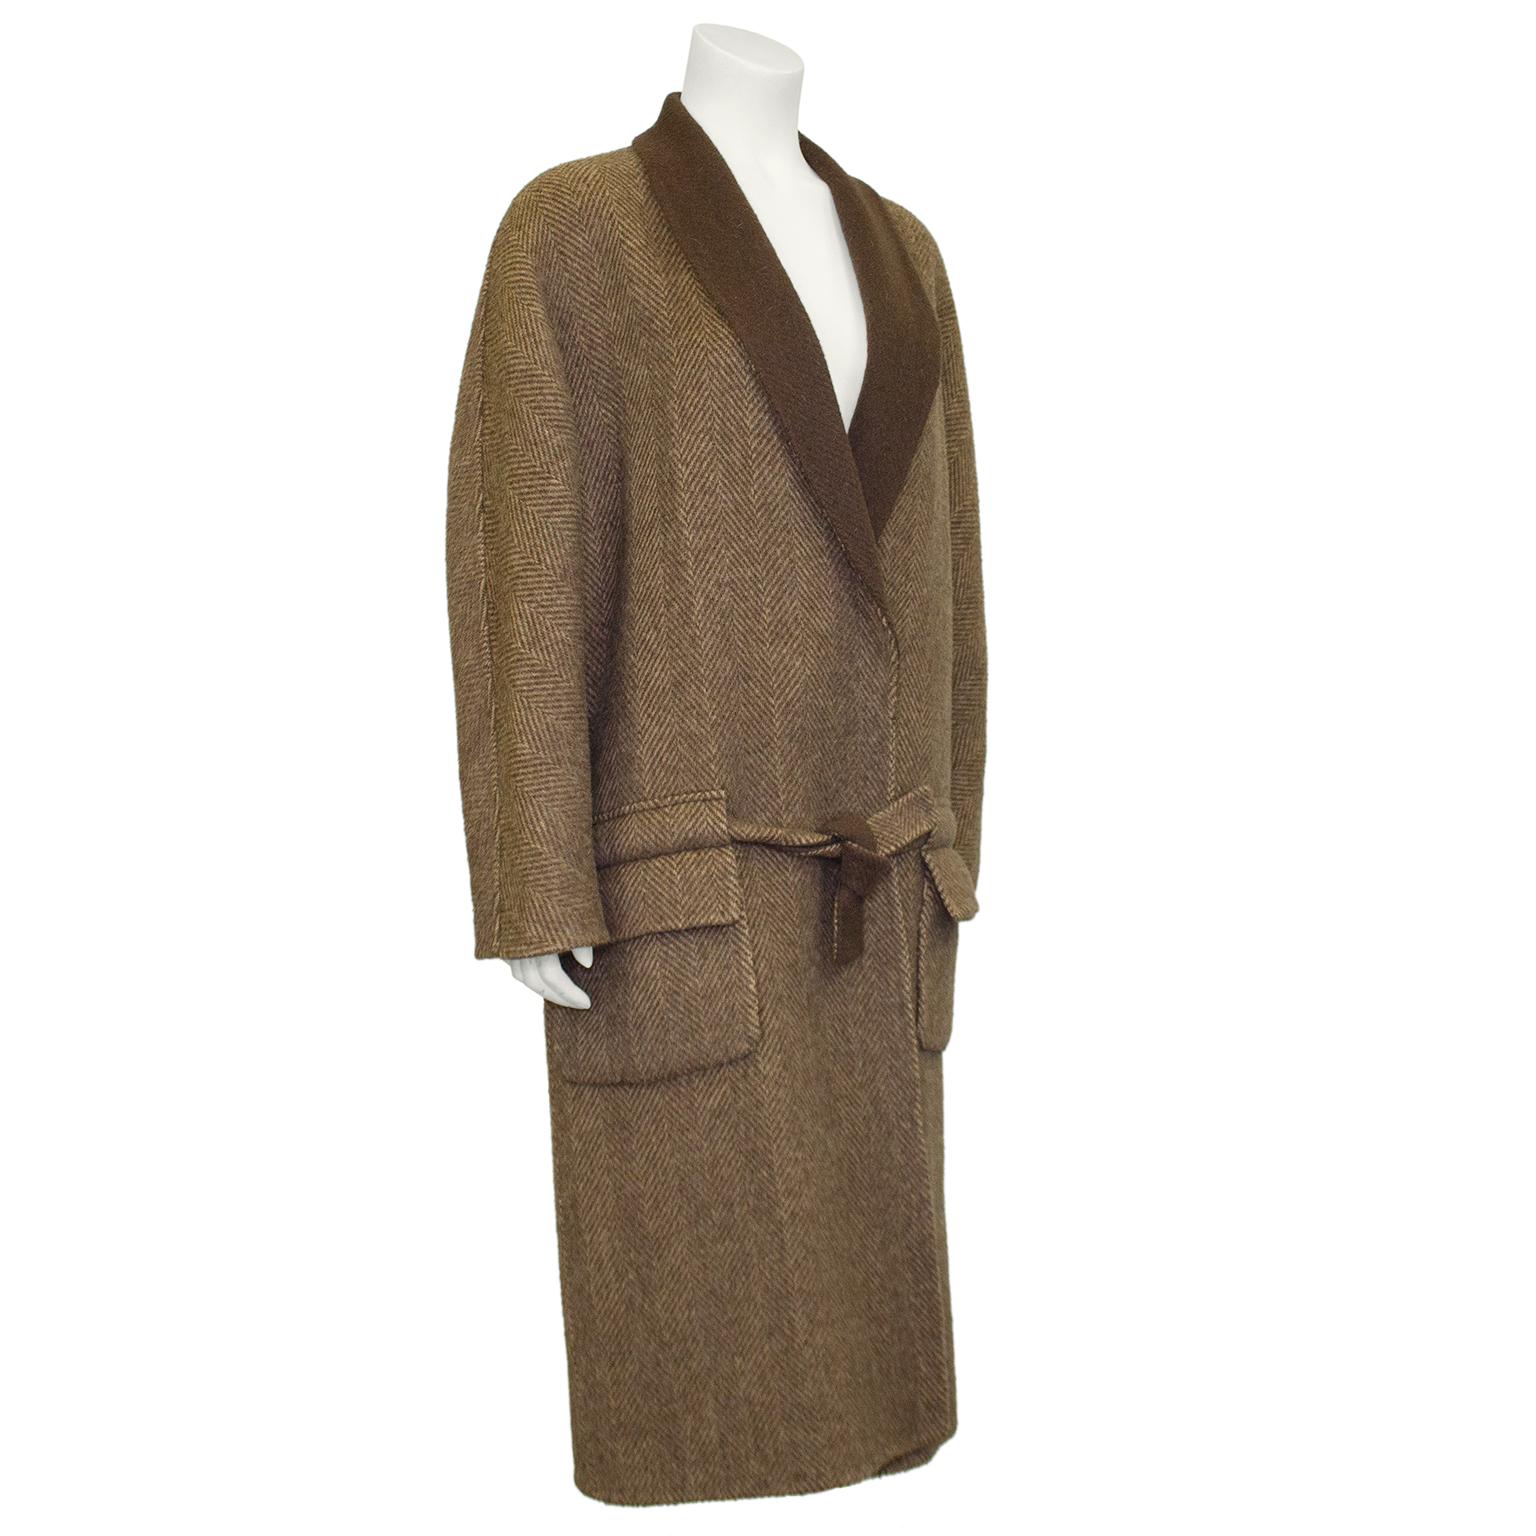 Manteau chic et discret en laine marron et crème à chevrons Roberta di Camerino, inspiré du peignoir. Conçu pour être légèrement surdimensionné avec une ceinture à nouer à la taille. De larges passants de ceinture horizontaux se trouvent au-dessus